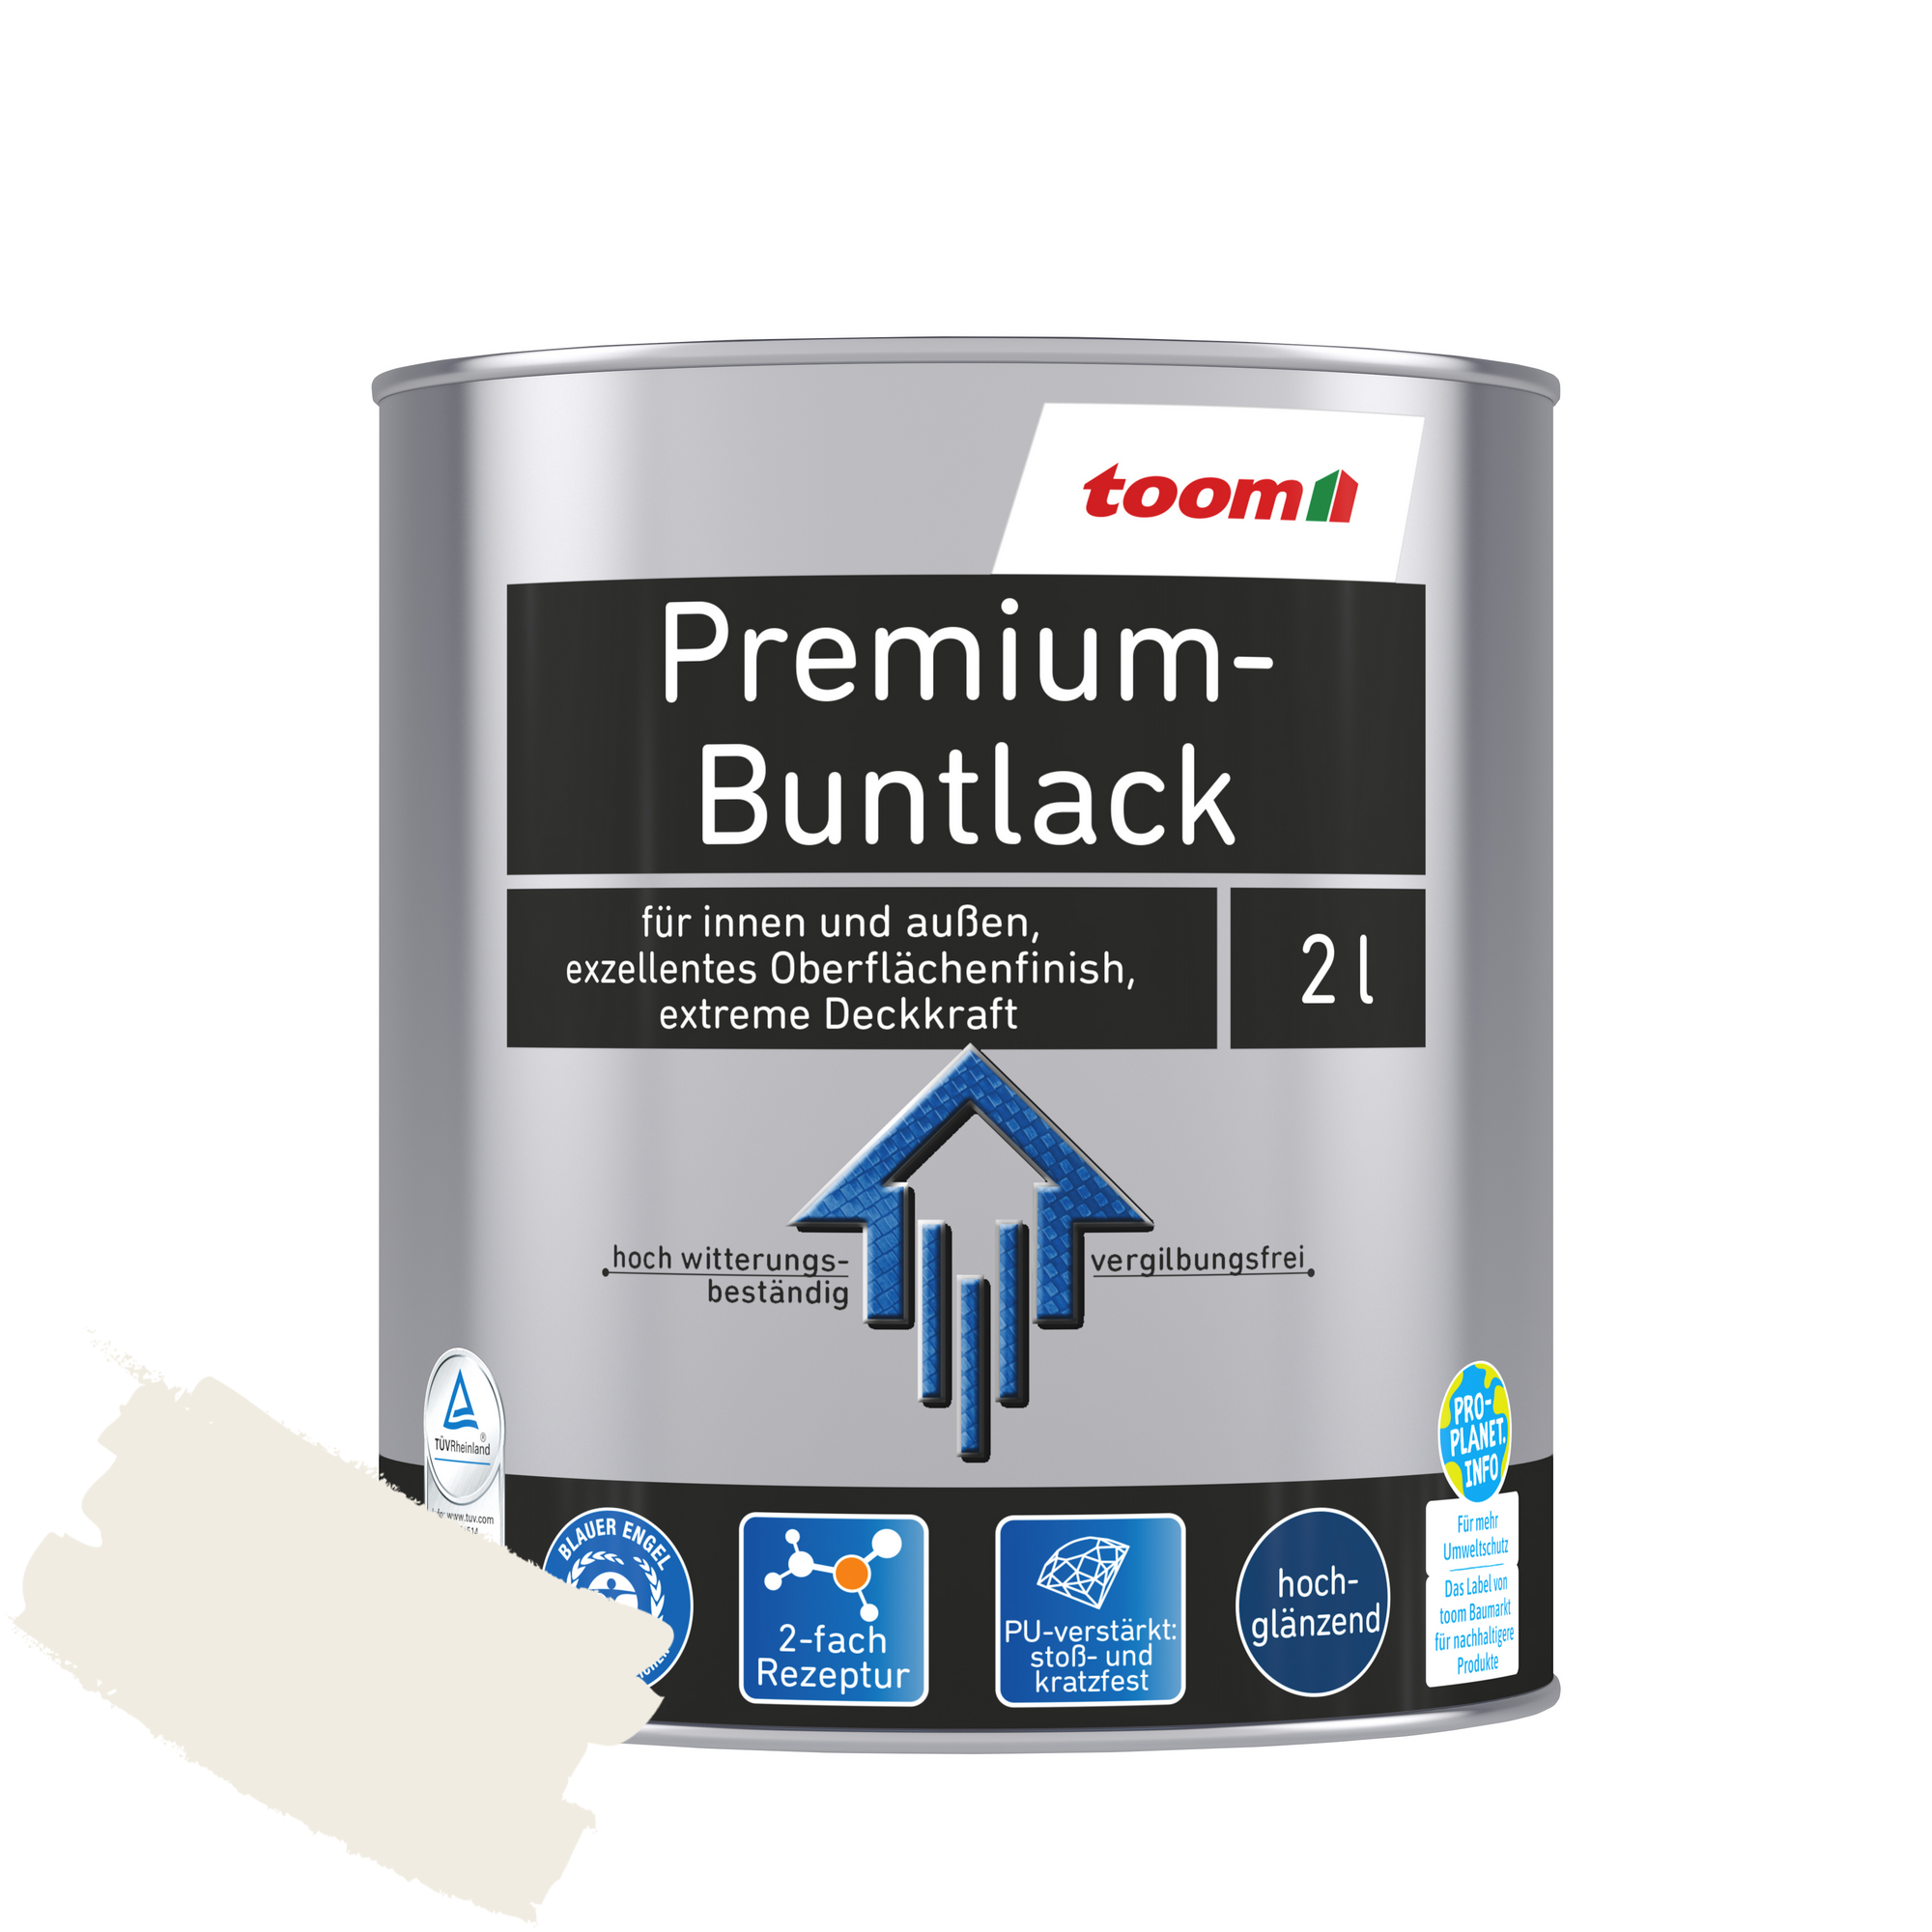 Premium-Buntlack reinweiß glänzend 2 l + product picture